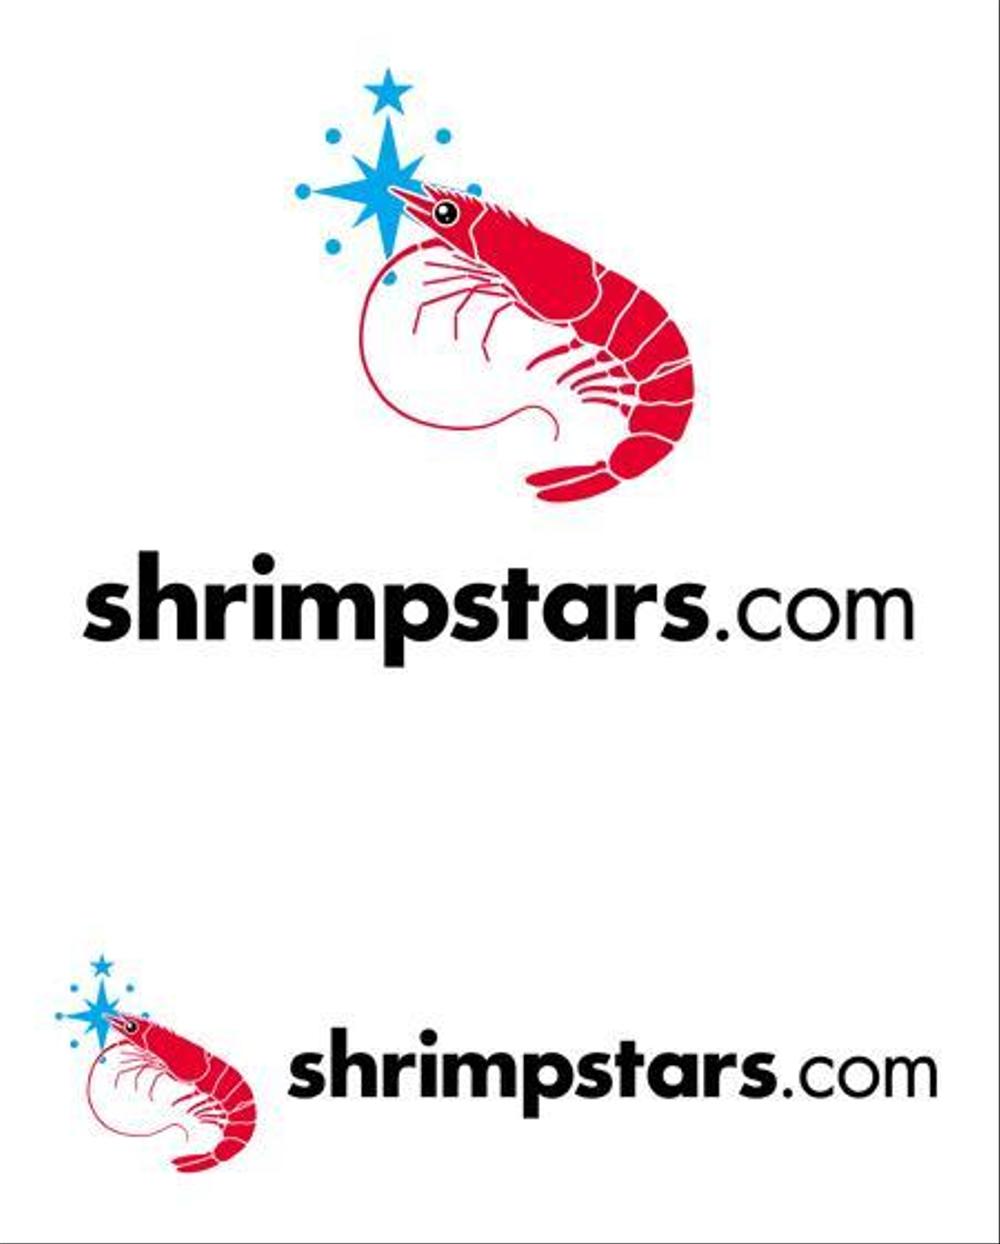 shrimpstars.com -1k.JPG